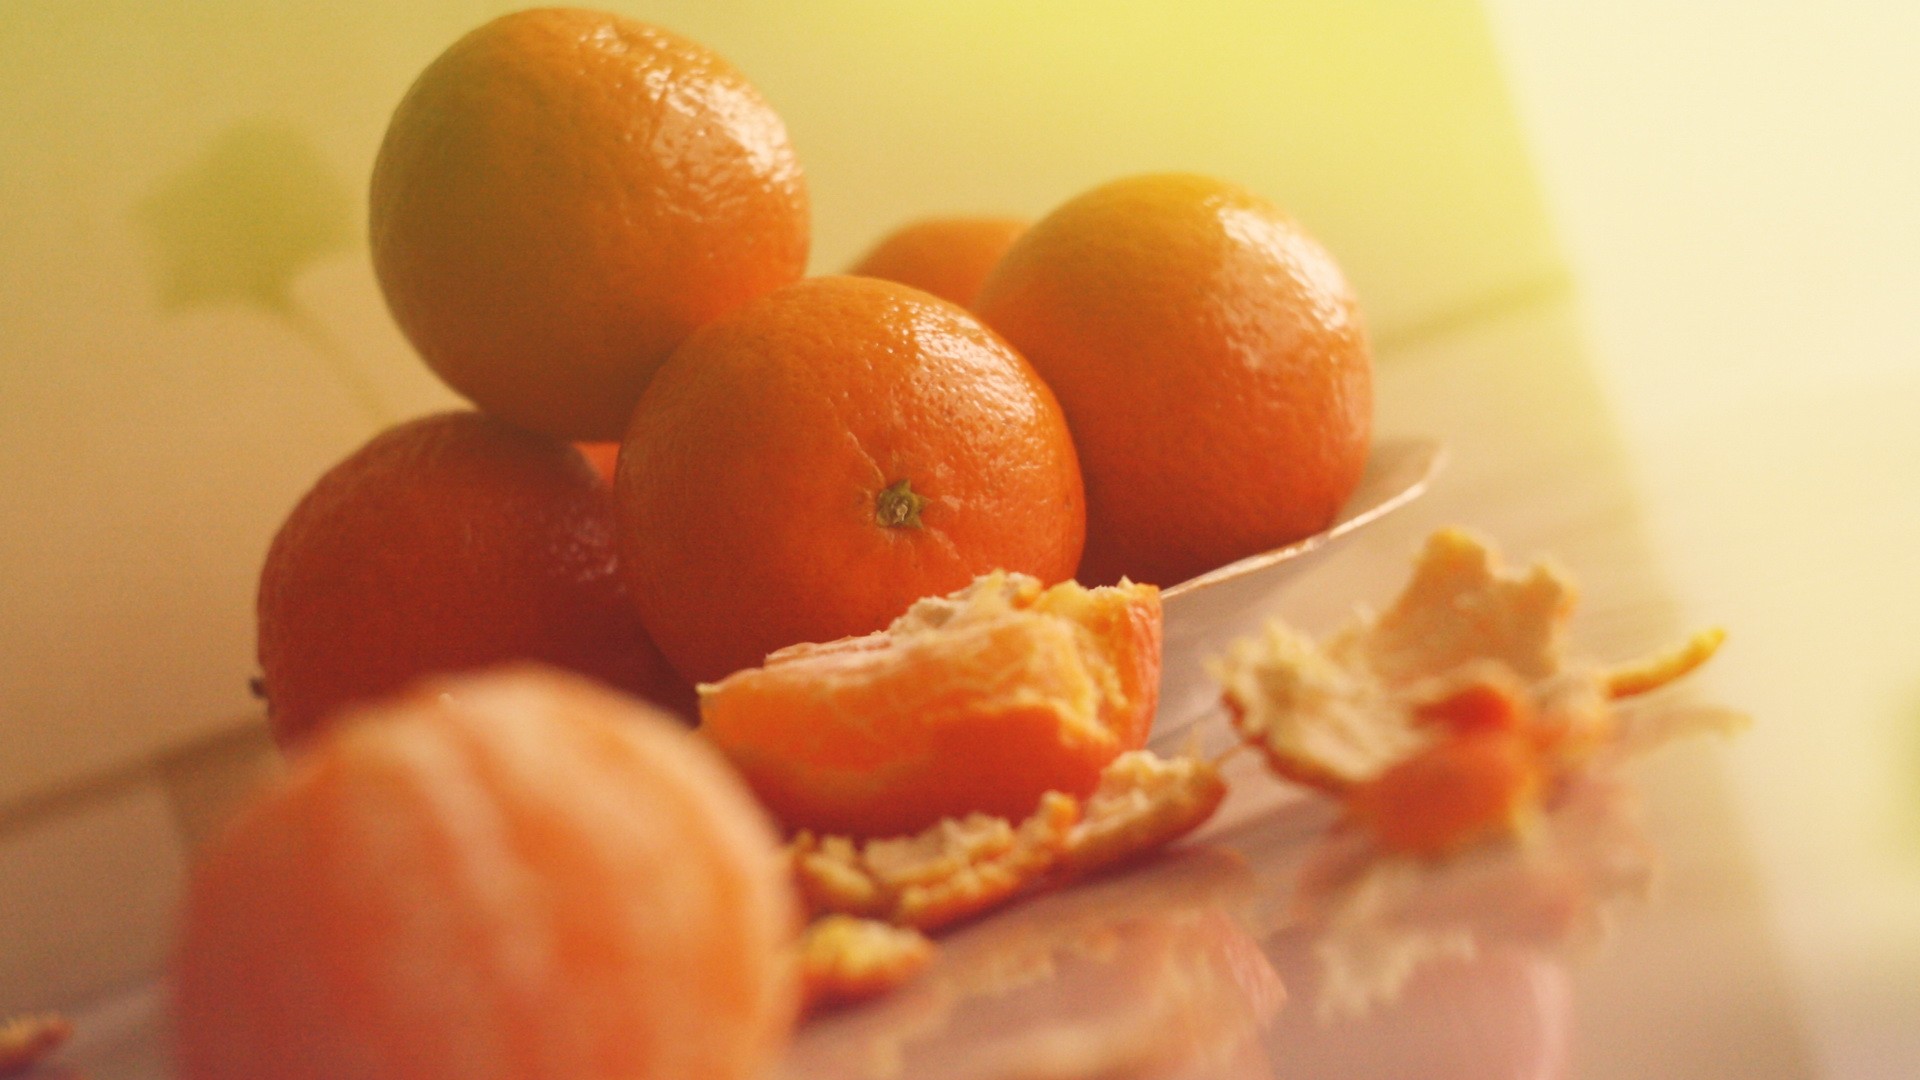 She likes oranges. Мандарин. Мандарины на столе. Апельсин и мандарин. Натюрморт с мандаринами.